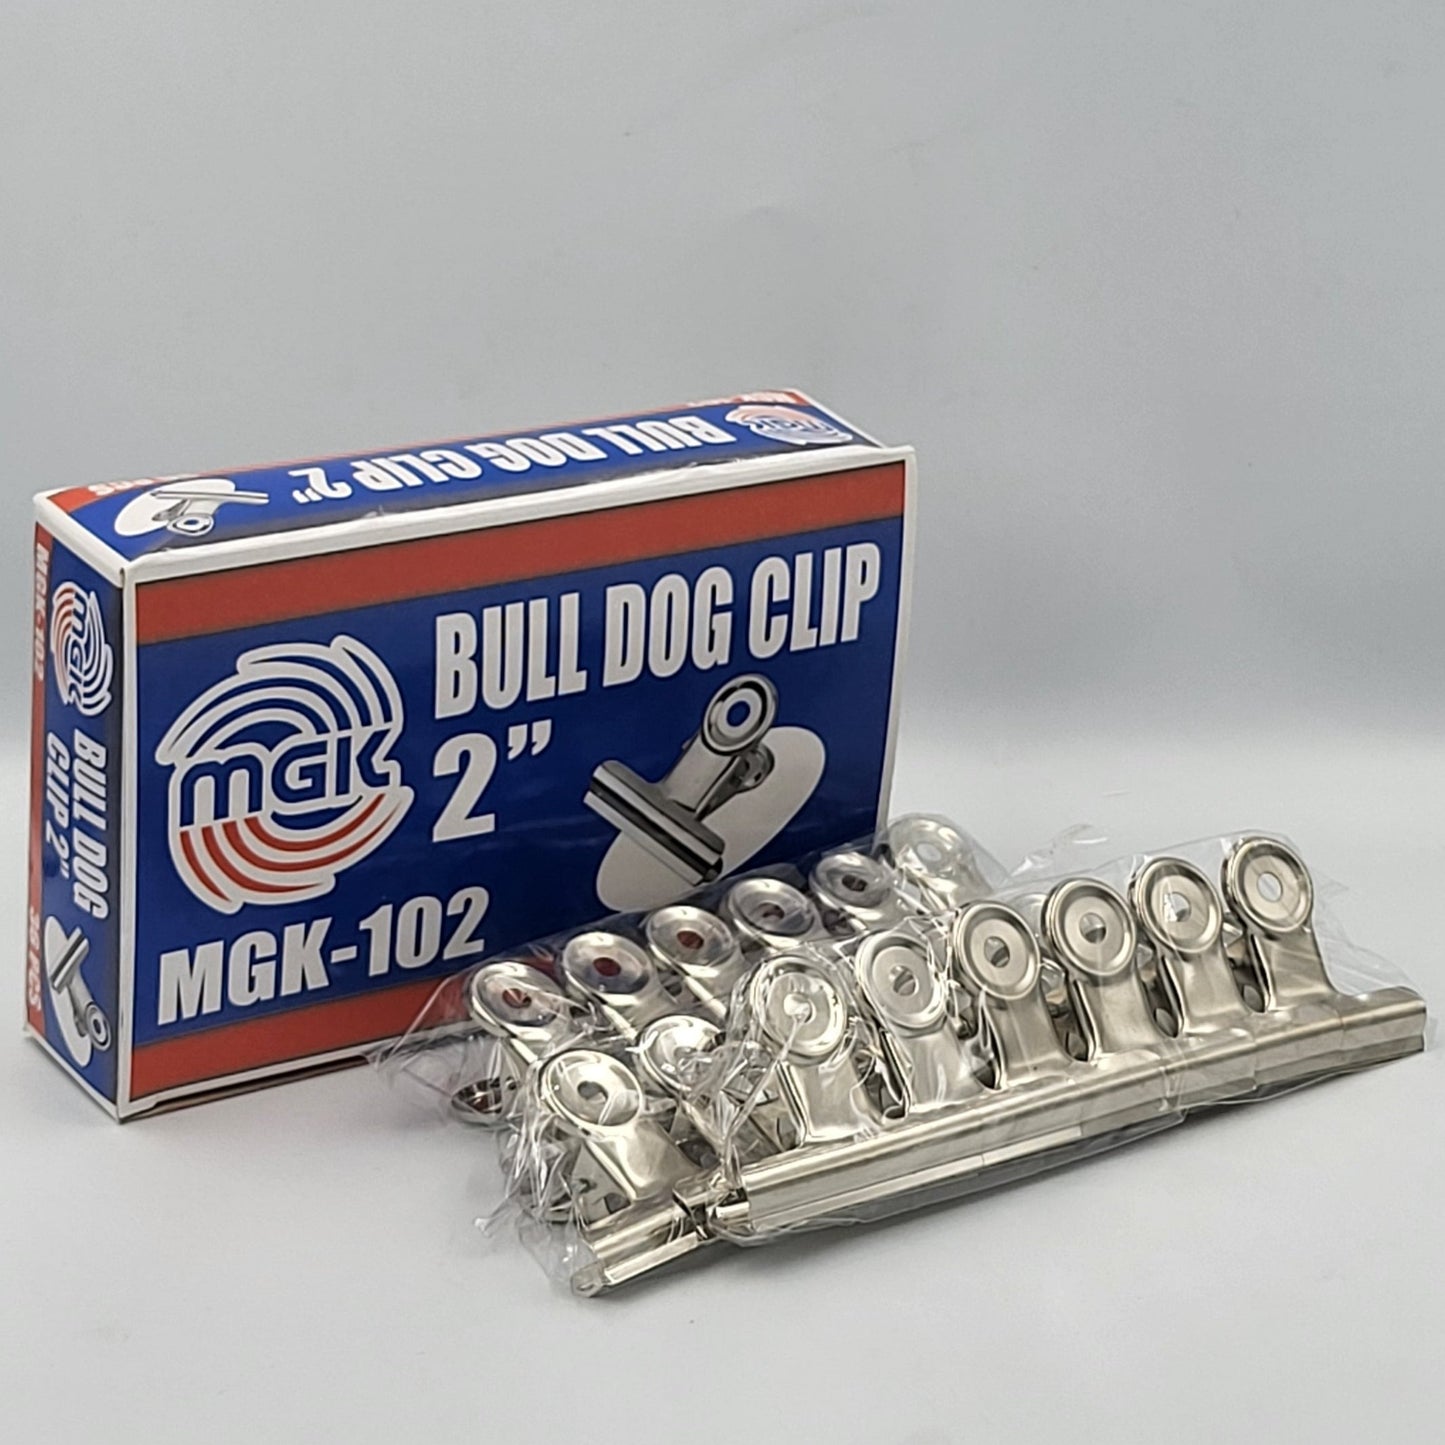 Bulldog Metal Paper Clip 2"